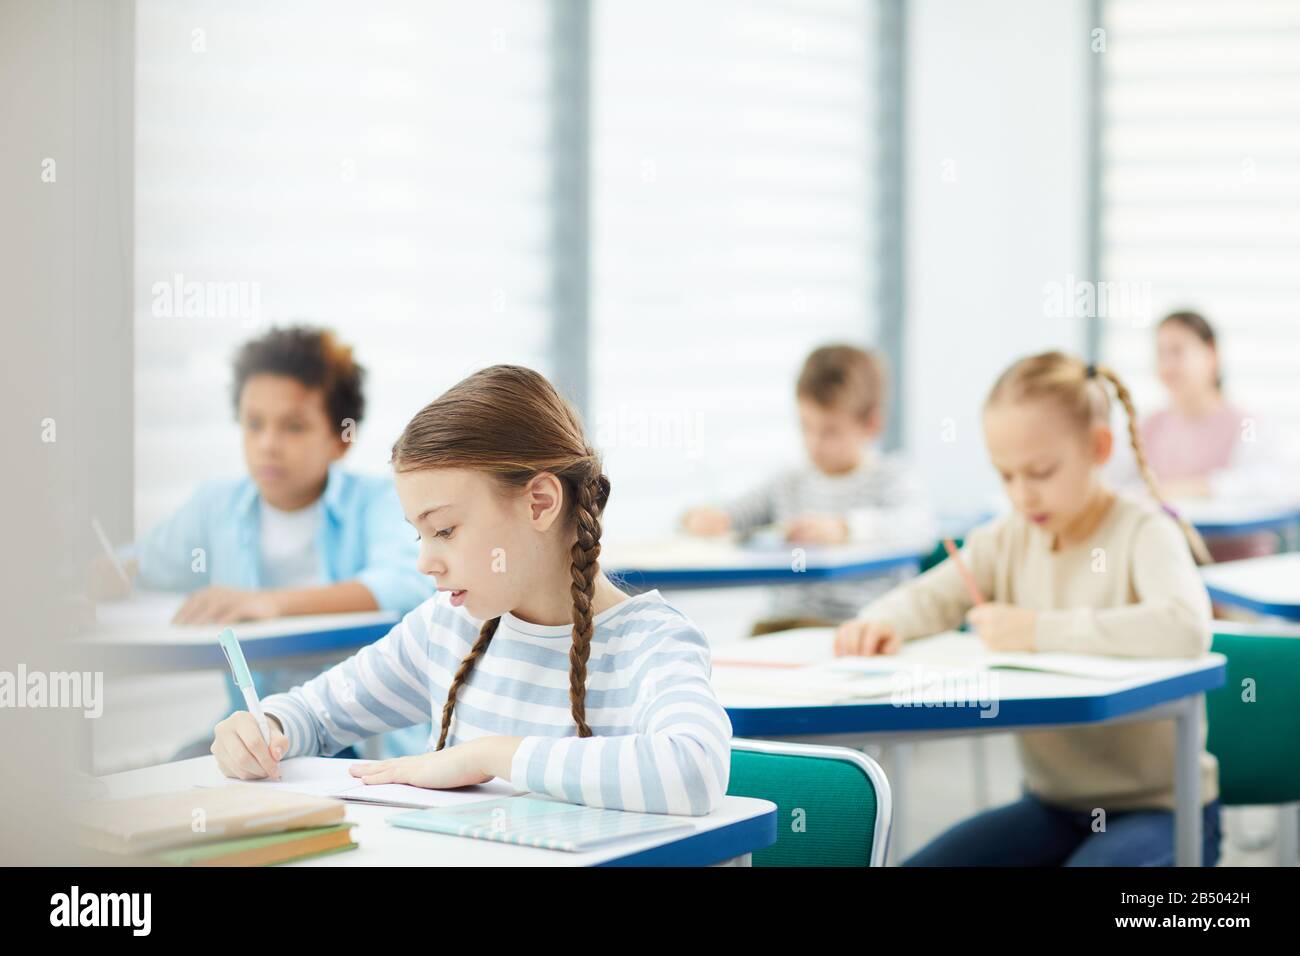 La fille caucasienne horizontale a concentré la photo des élèves de l'école primaire faisant des tâches de leçon dans la salle de classe moderne, espace de copie Banque D'Images